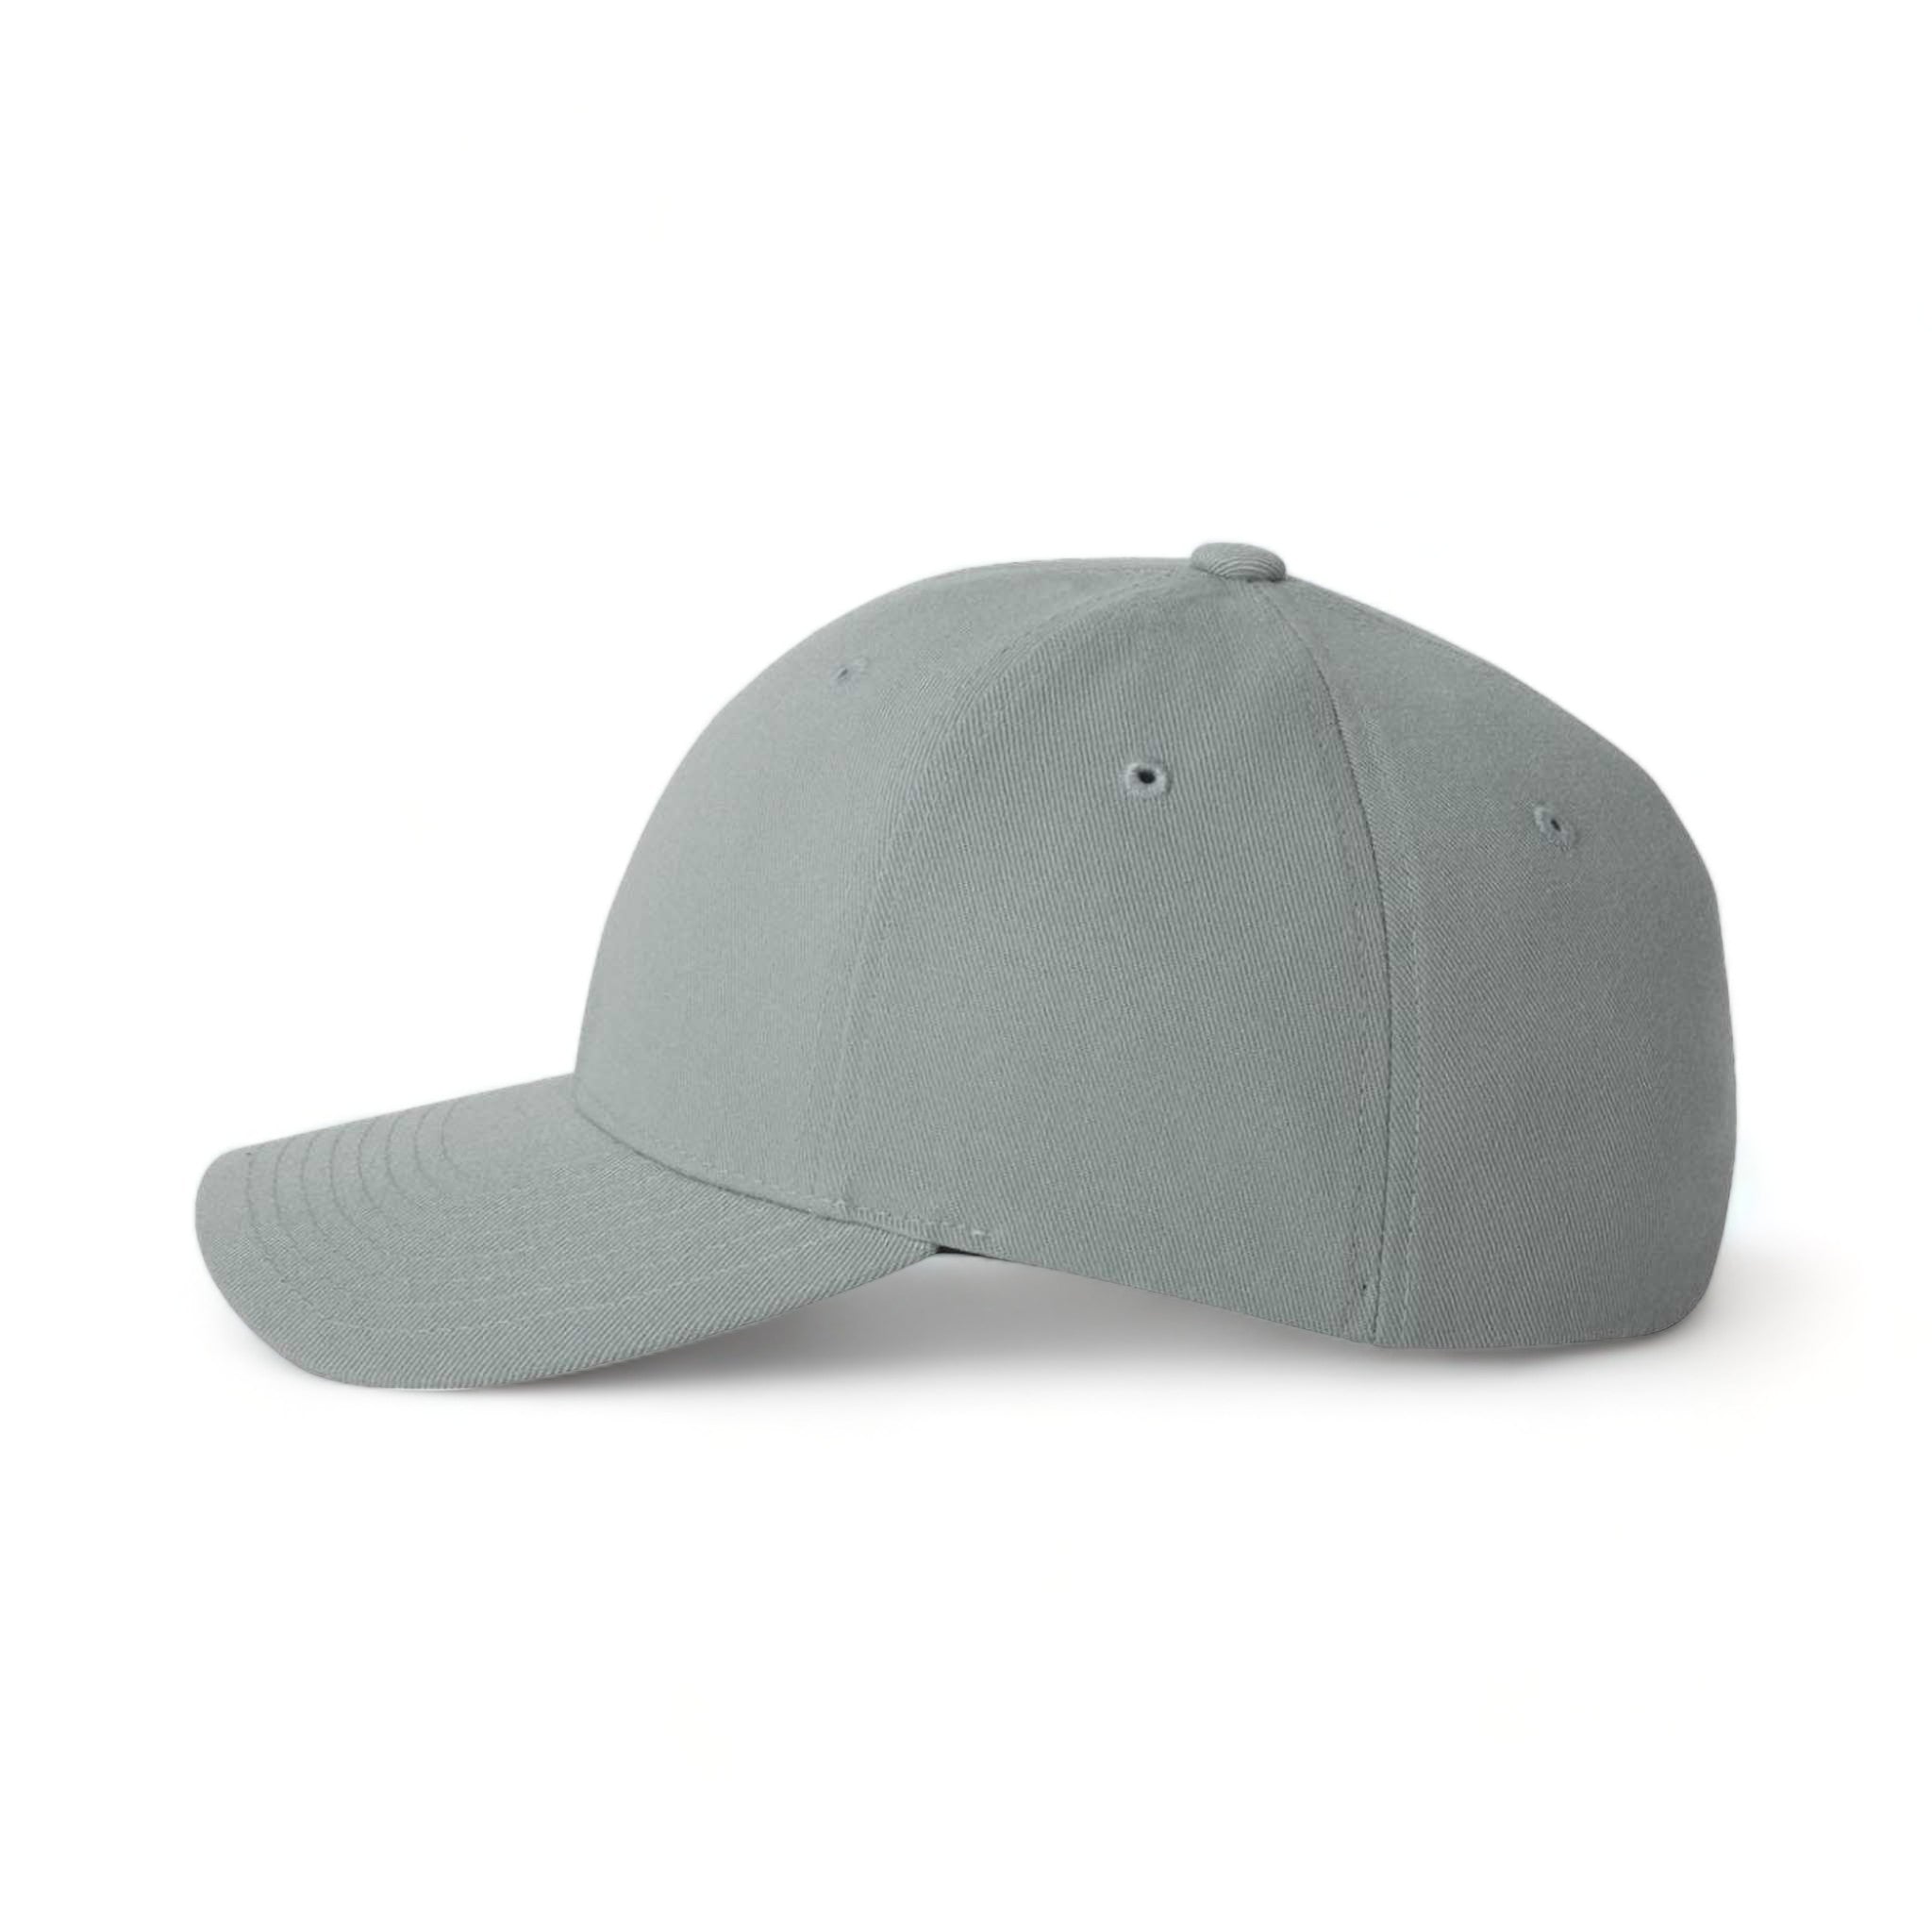 Side view of Flexfit 6580 custom hat in grey